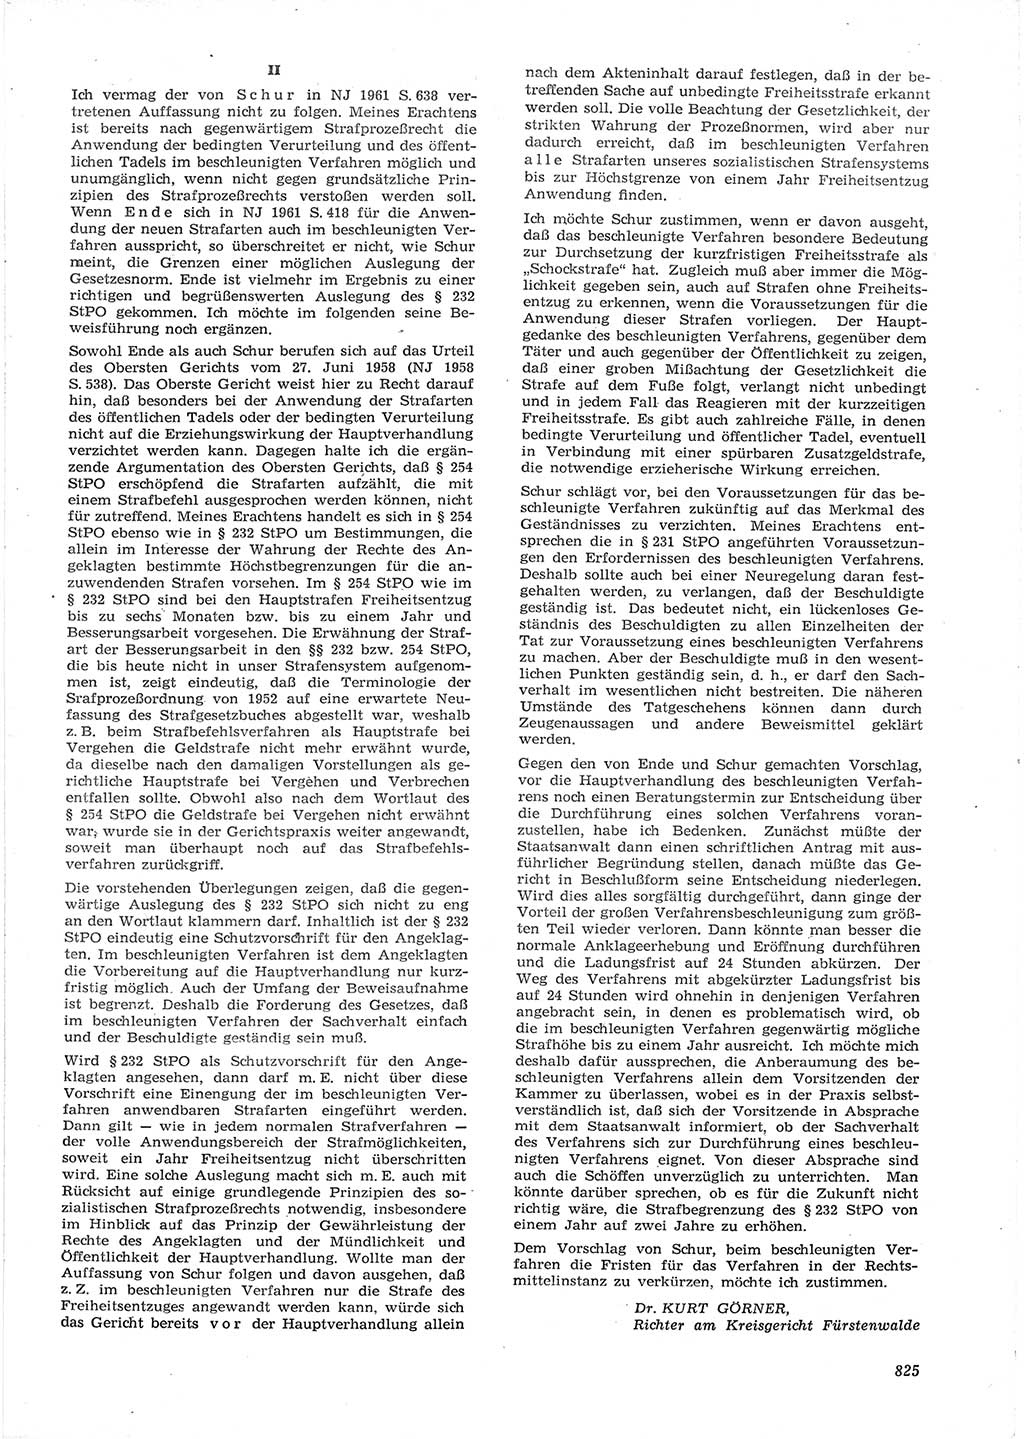 Neue Justiz (NJ), Zeitschrift für Recht und Rechtswissenschaft [Deutsche Demokratische Republik (DDR)], 15. Jahrgang 1961, Seite 825 (NJ DDR 1961, S. 825)